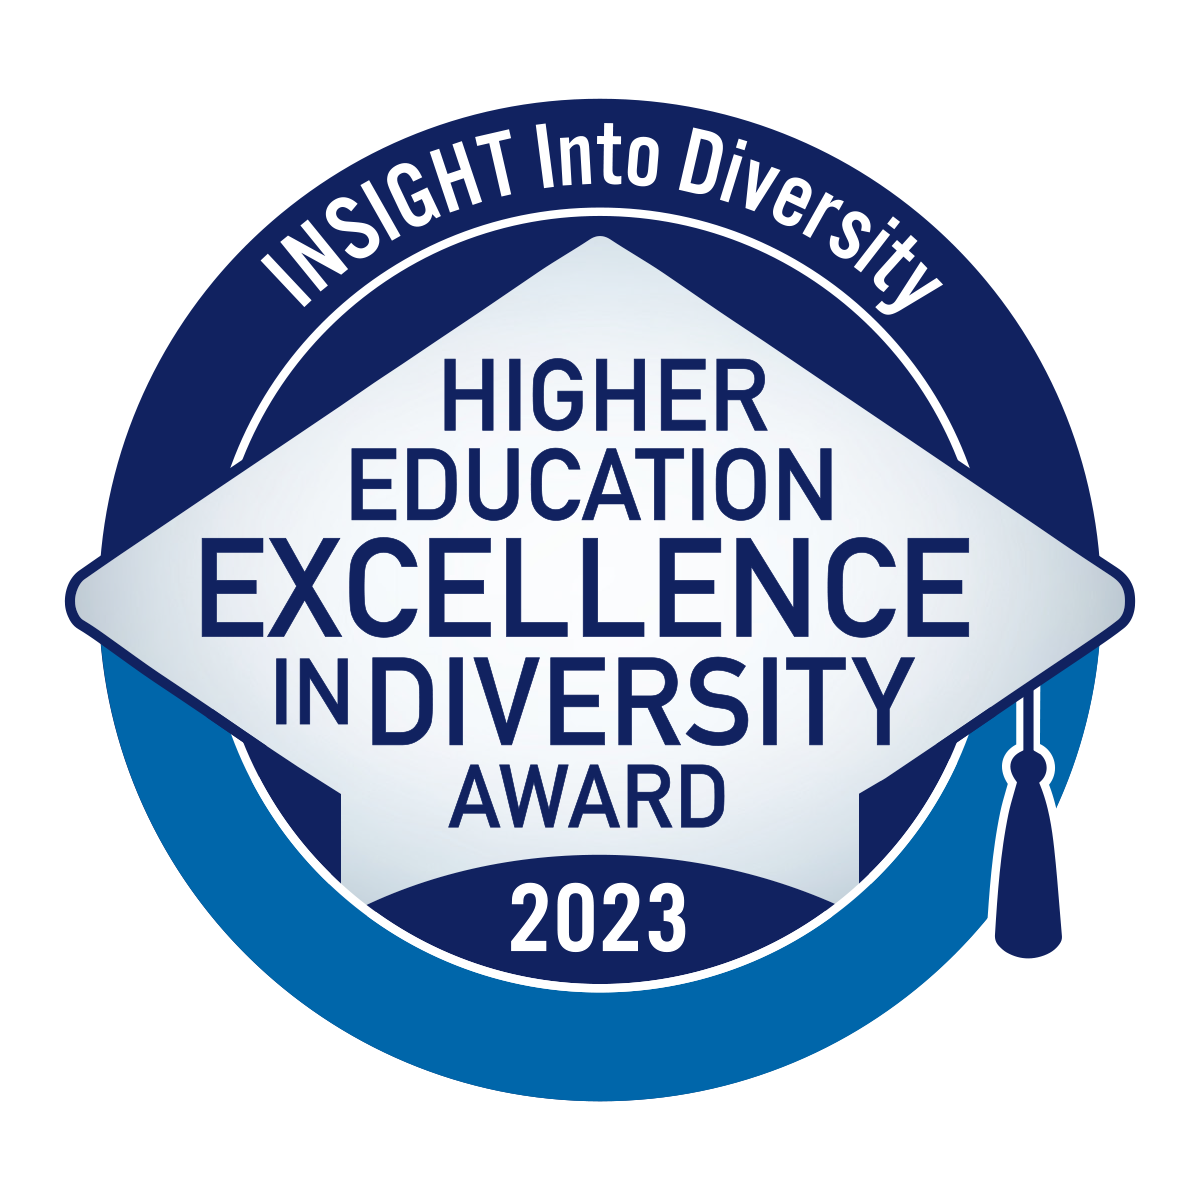 Insight Into Diversity HEED Award 2023